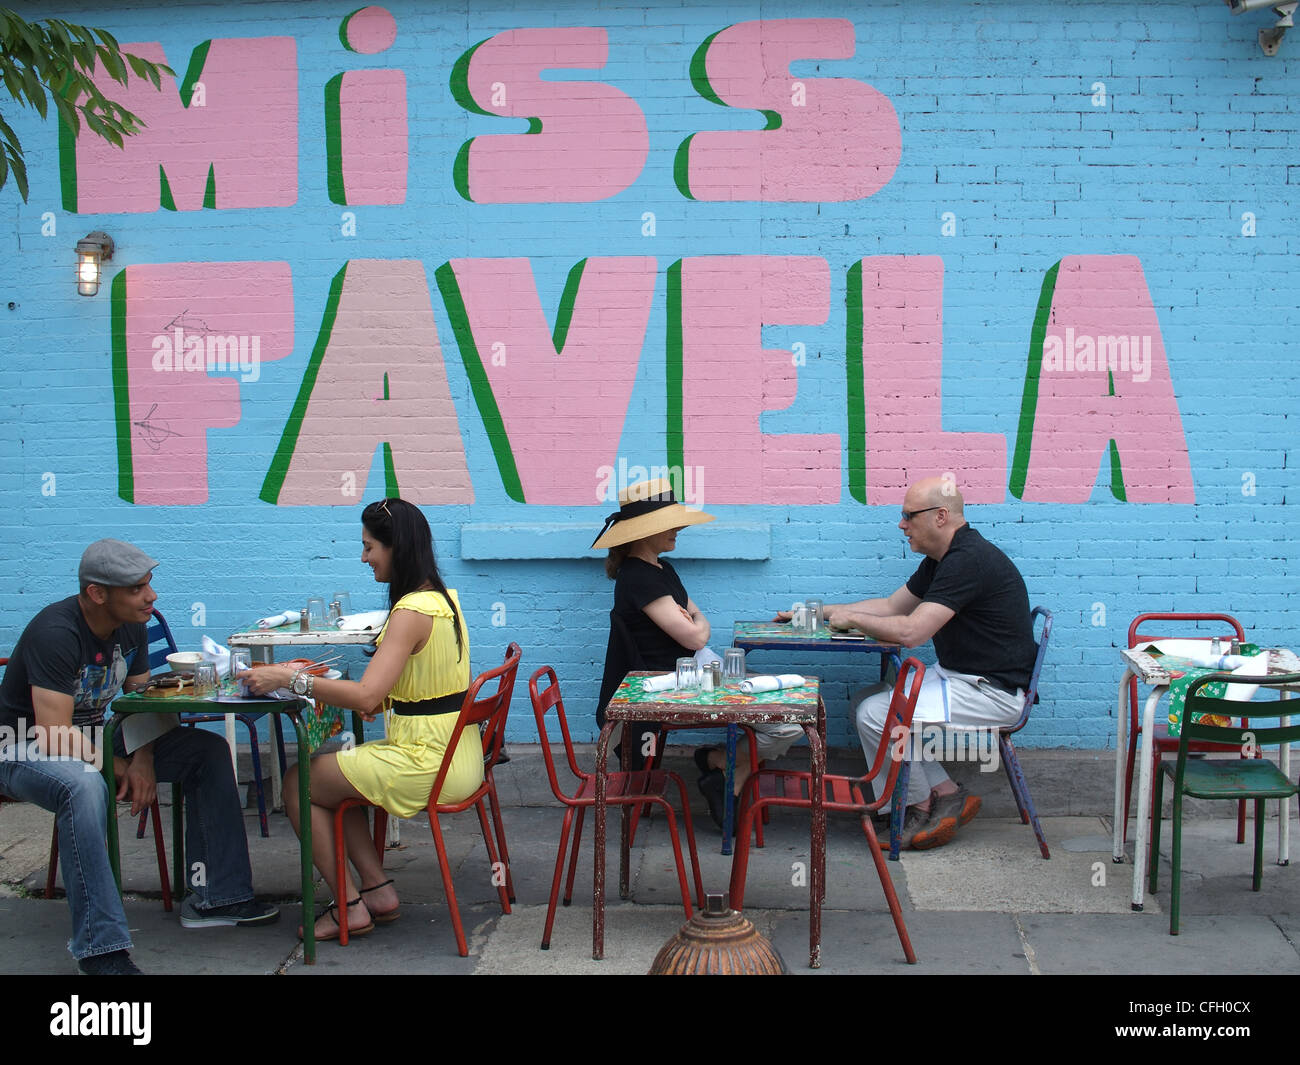 Les clients bénéficiant d'une terrasse de restaurant brésilien, Mlle Favela, Brooklyn, New York Banque D'Images